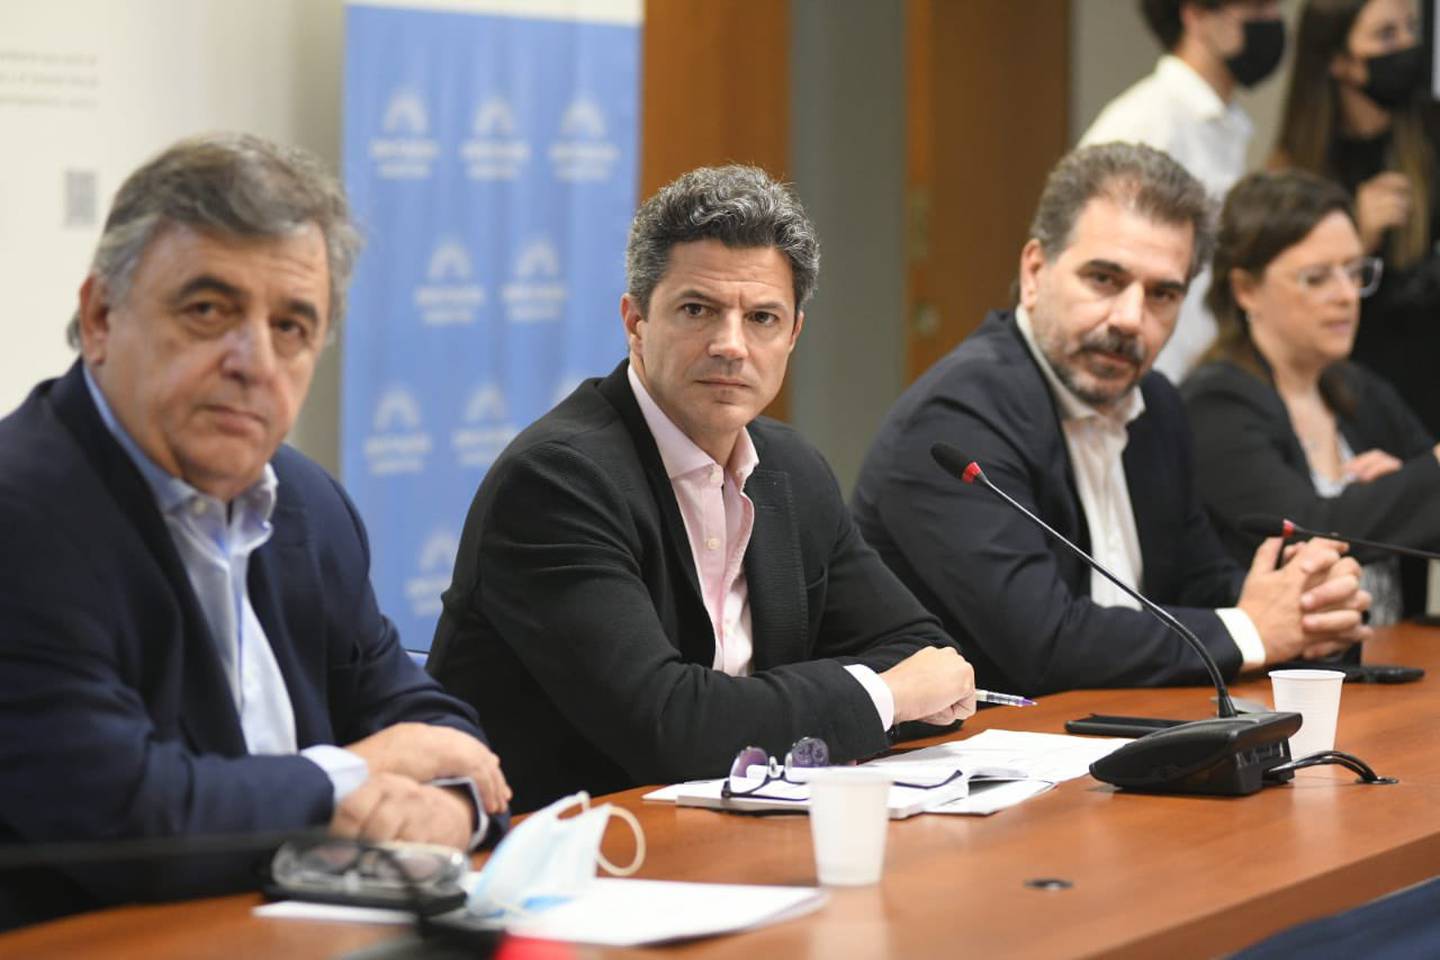 El diputado rosarino, rodeado por el jefe radical, Mario Negri, y el jefe del PRO, Cristian Ritondo.dfd